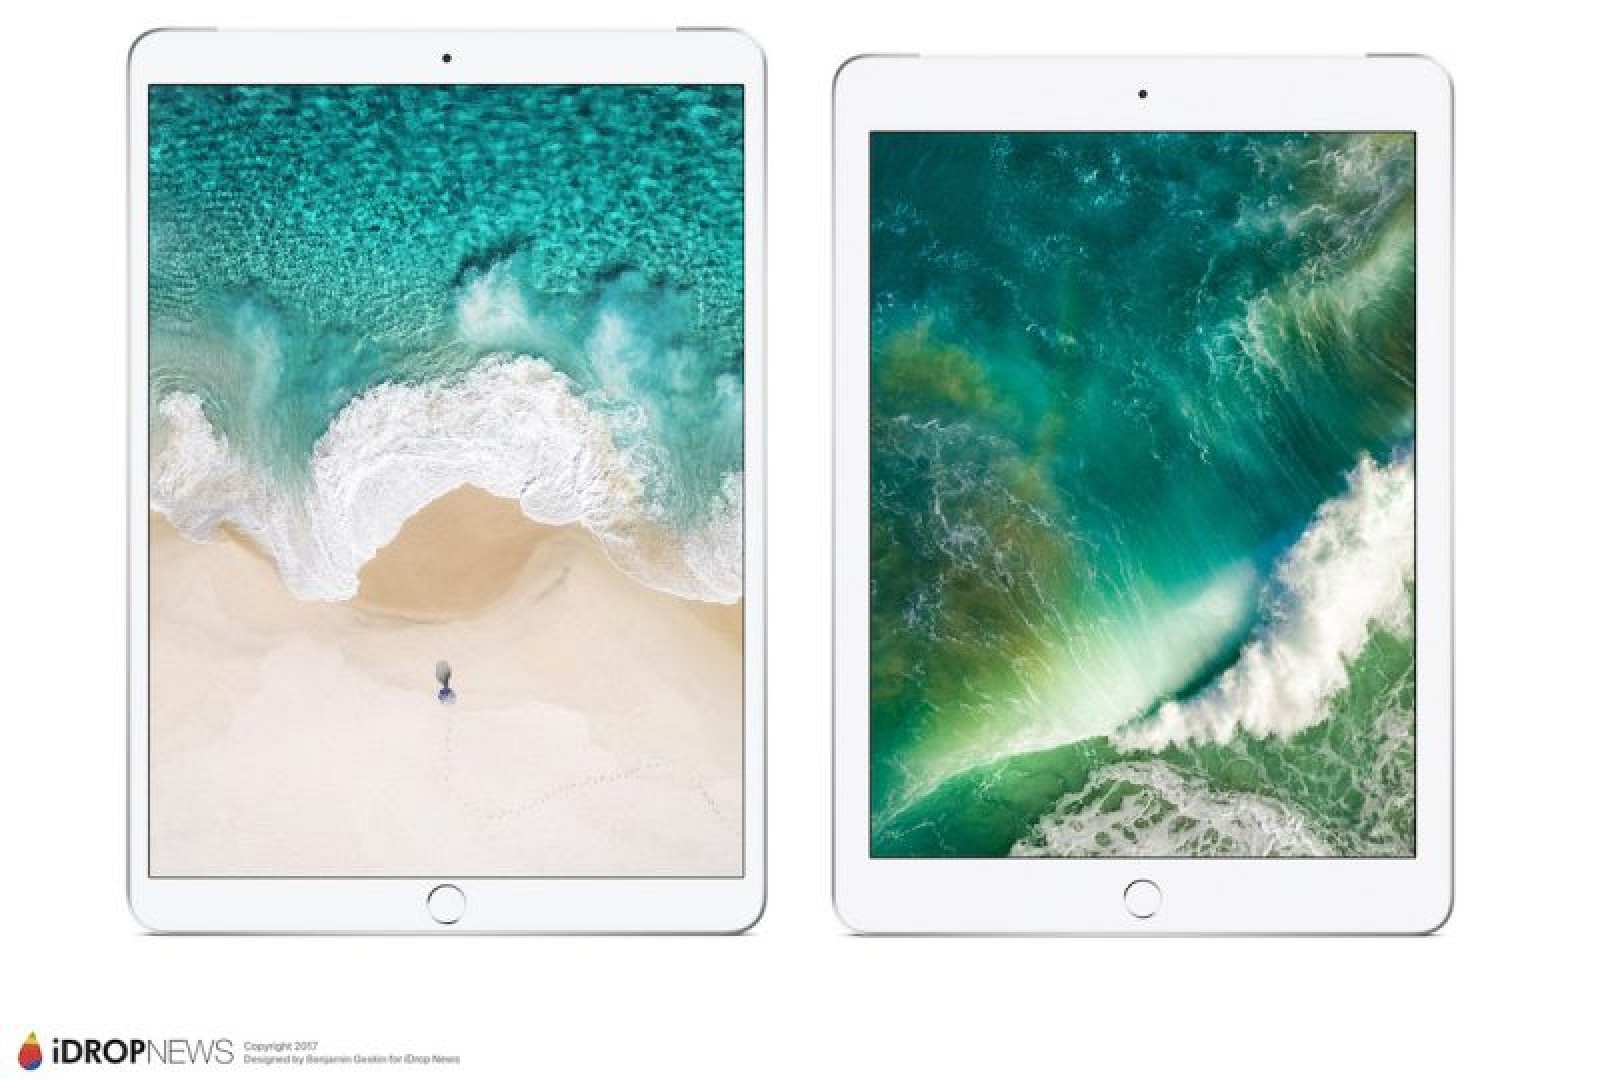 Nadchodzący iPad Pro o przekątnej 10,5 cala (z lewej strony) w porównaniu z obecnym iPadem o przekątnej 9,7 cala (po prawej)